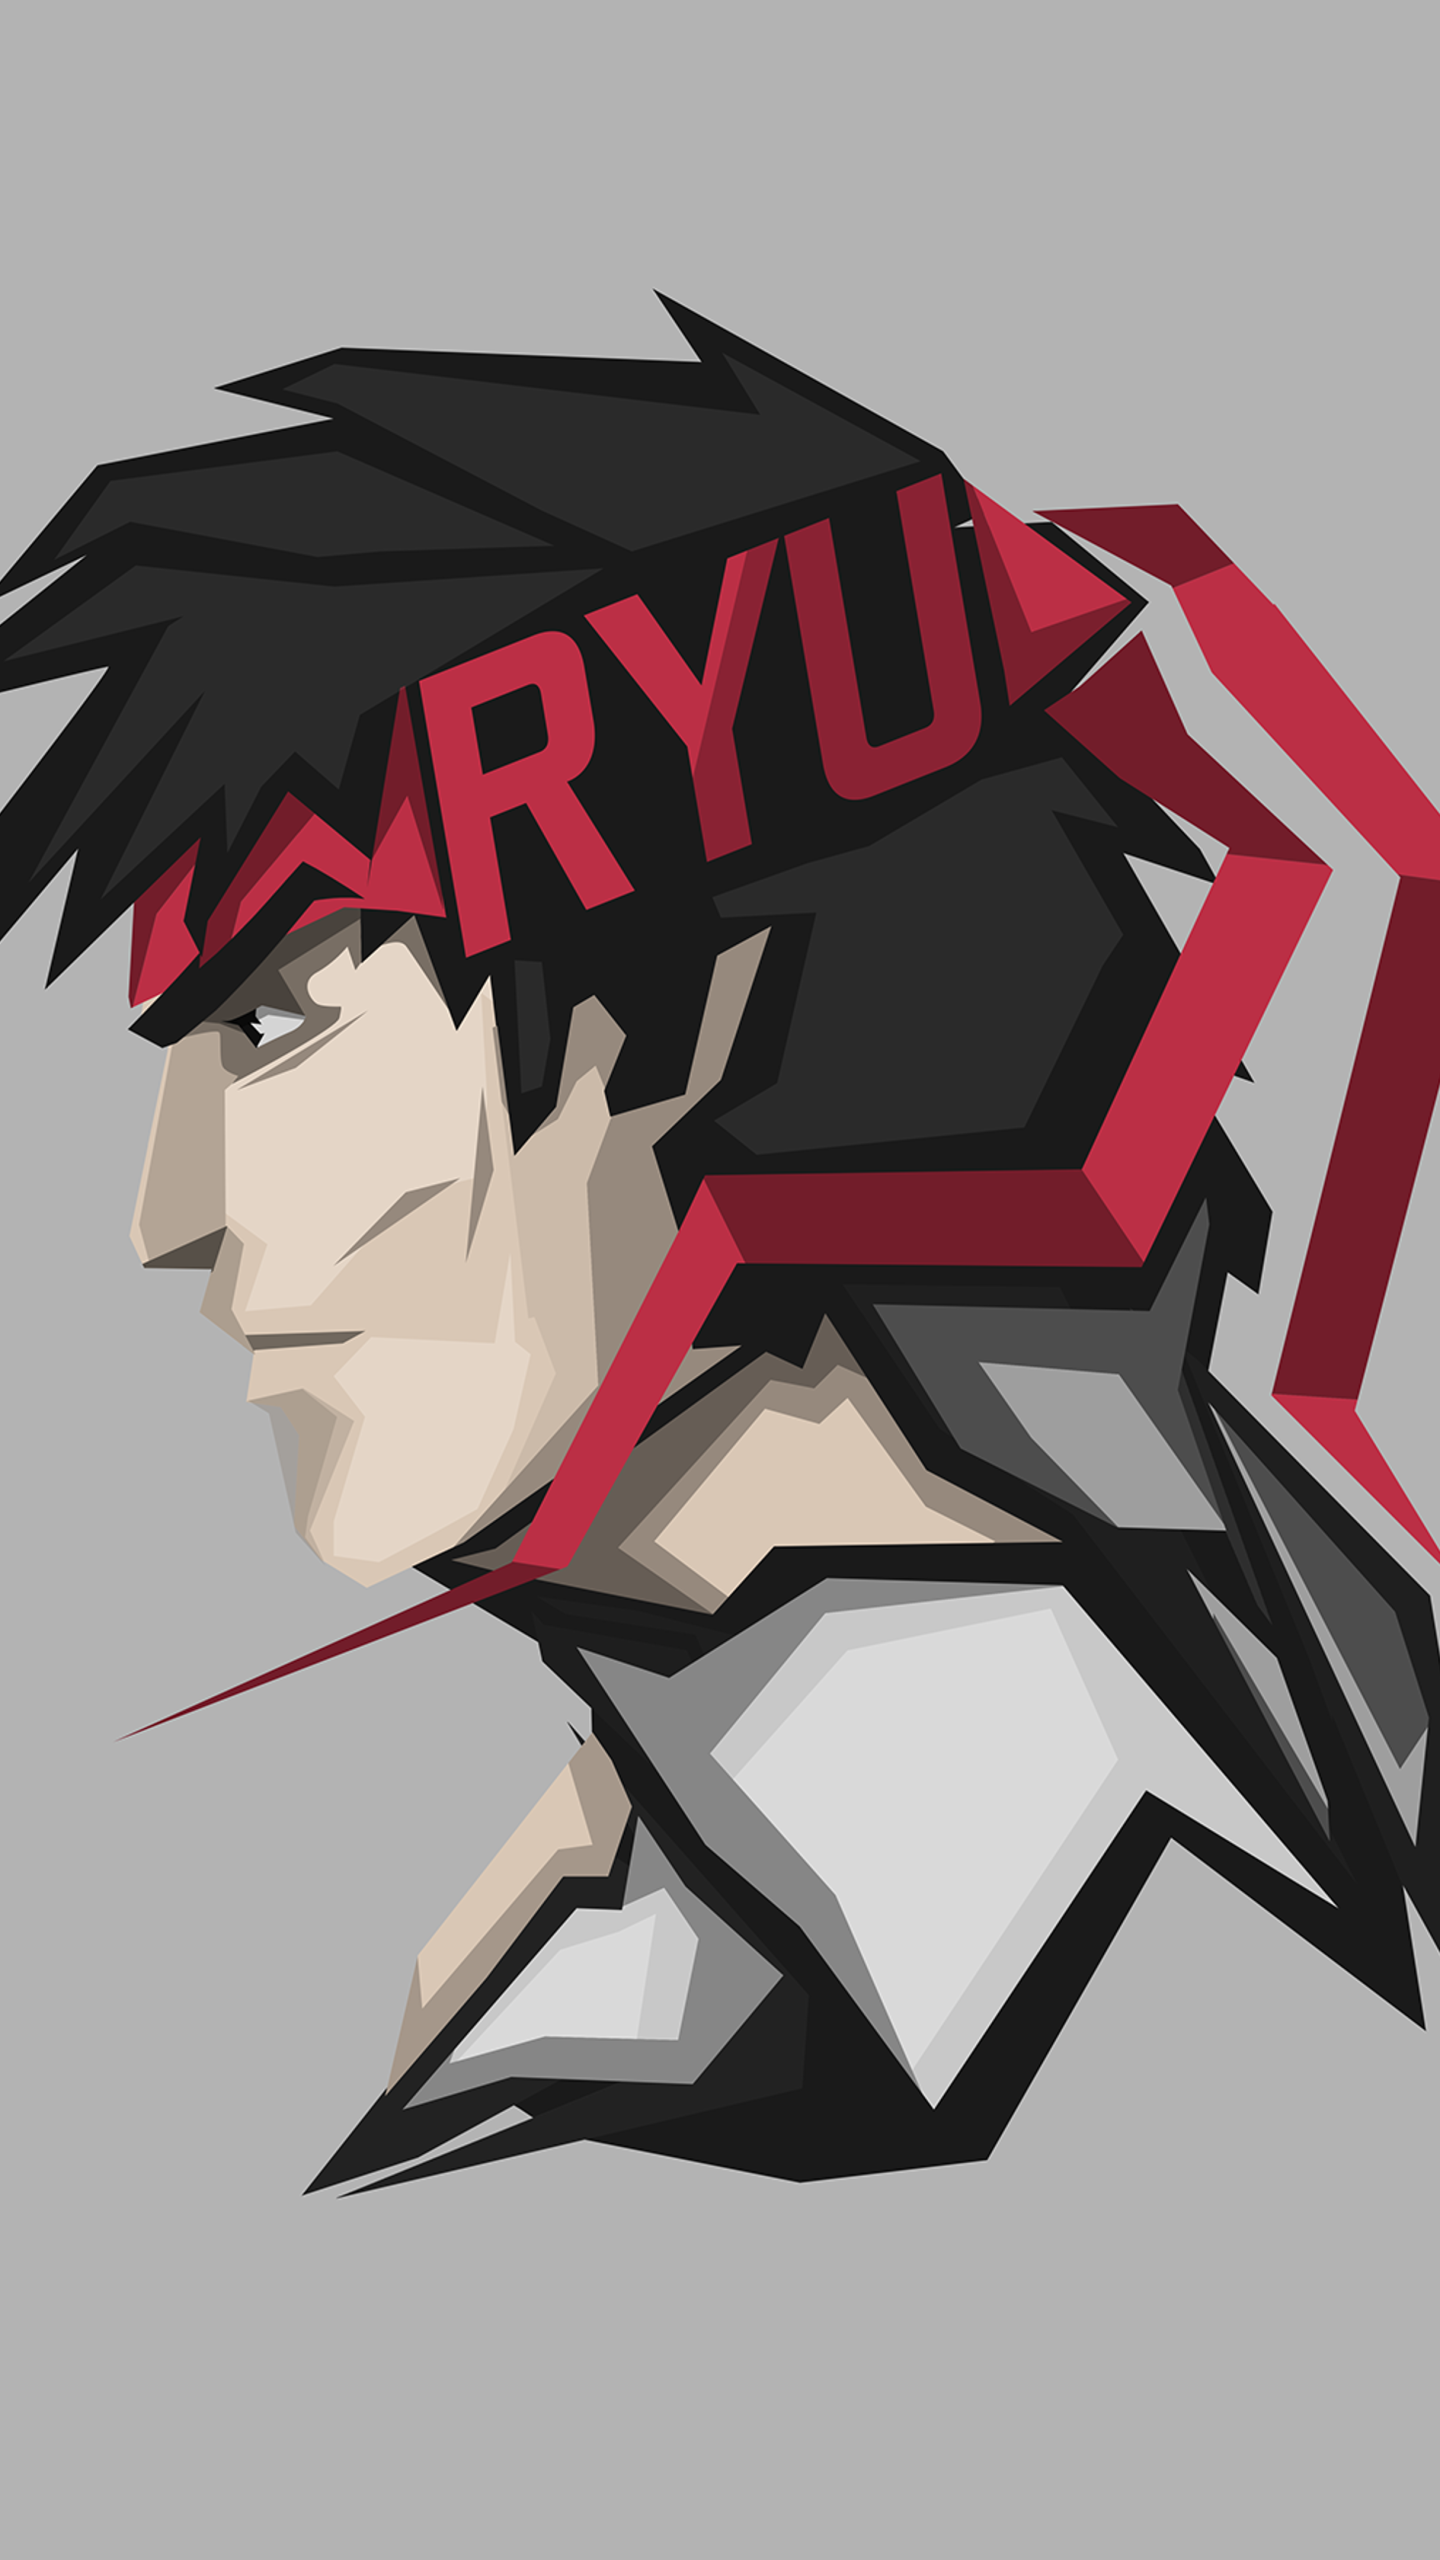 Ryu (Street Fighter) by BossLogic